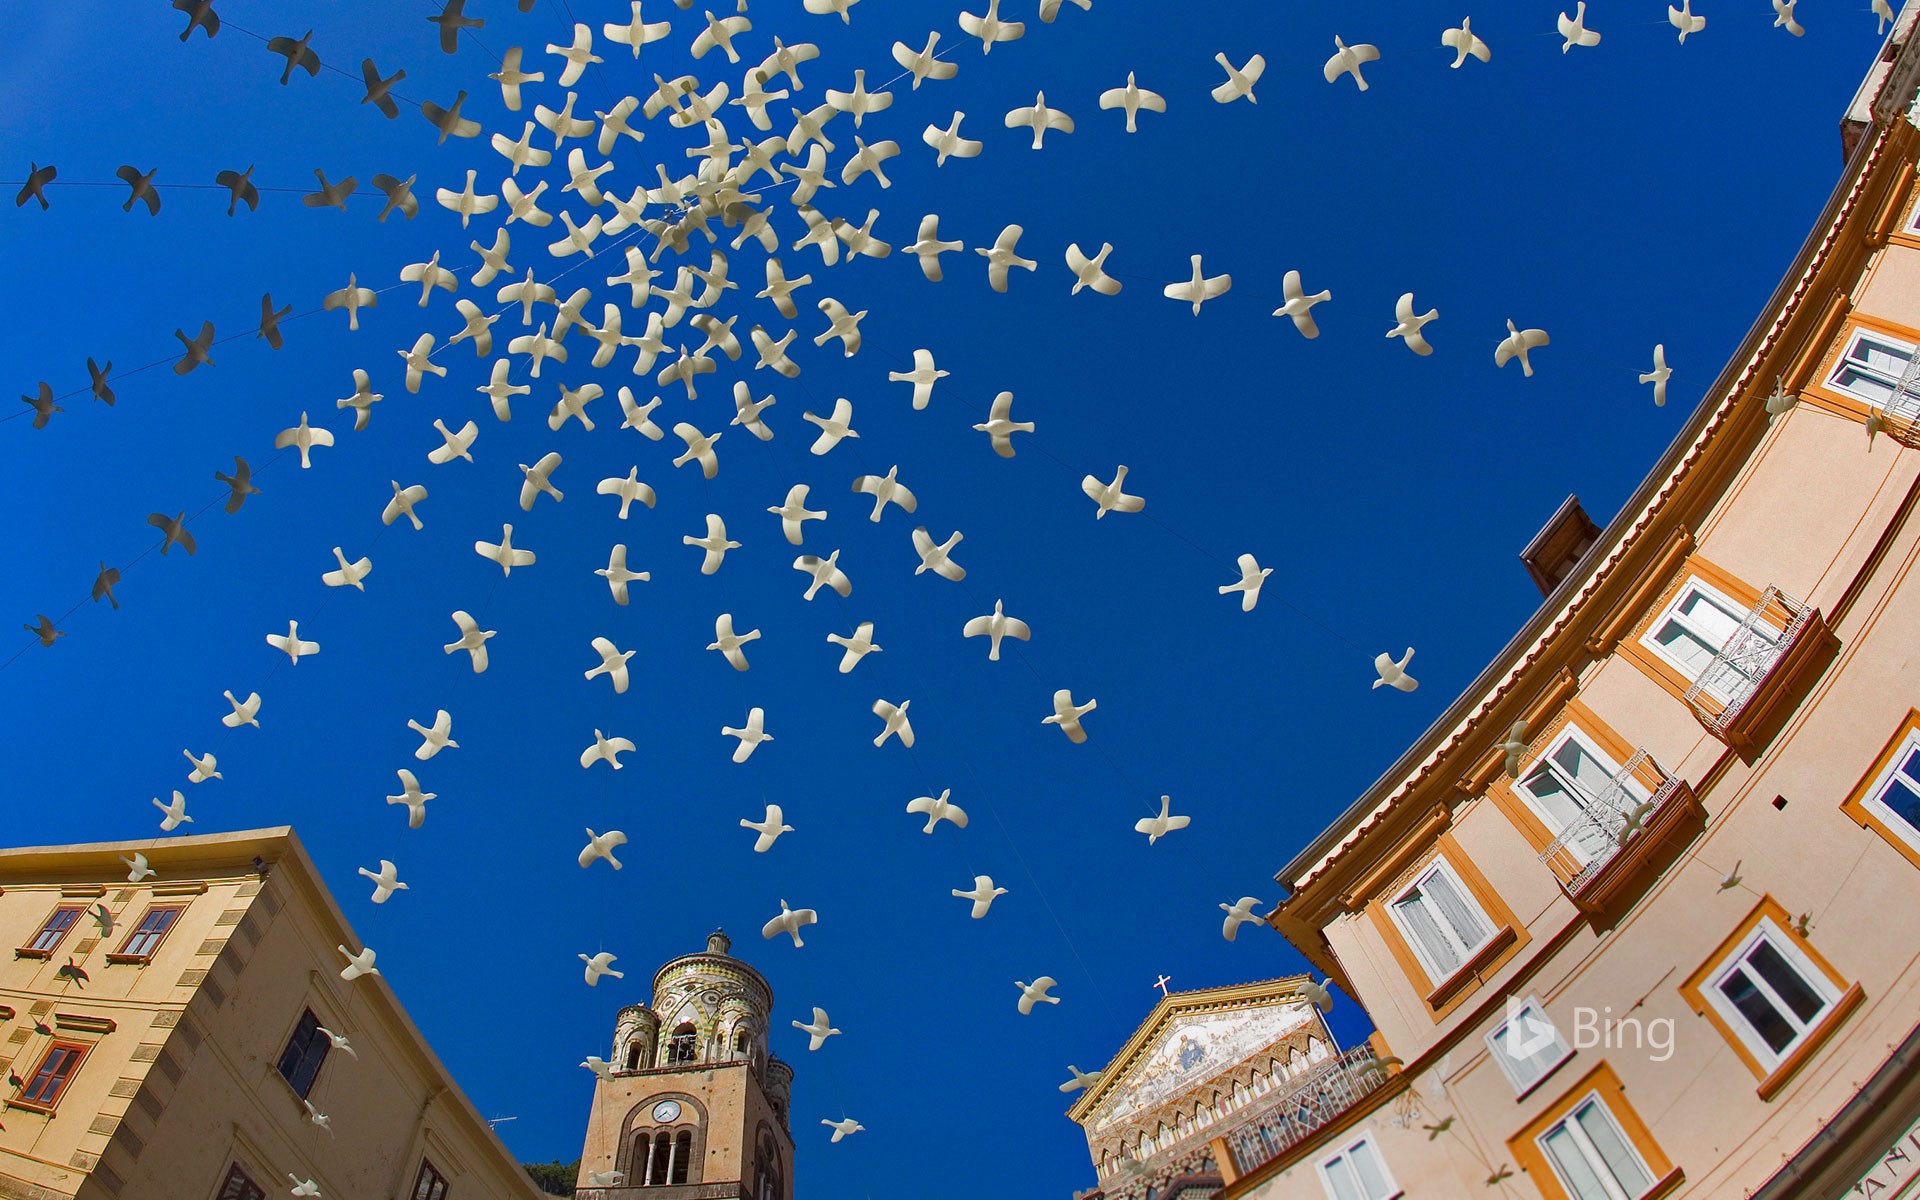 Dove art installation above the Piazza del Duomo in Amalfi, Italy